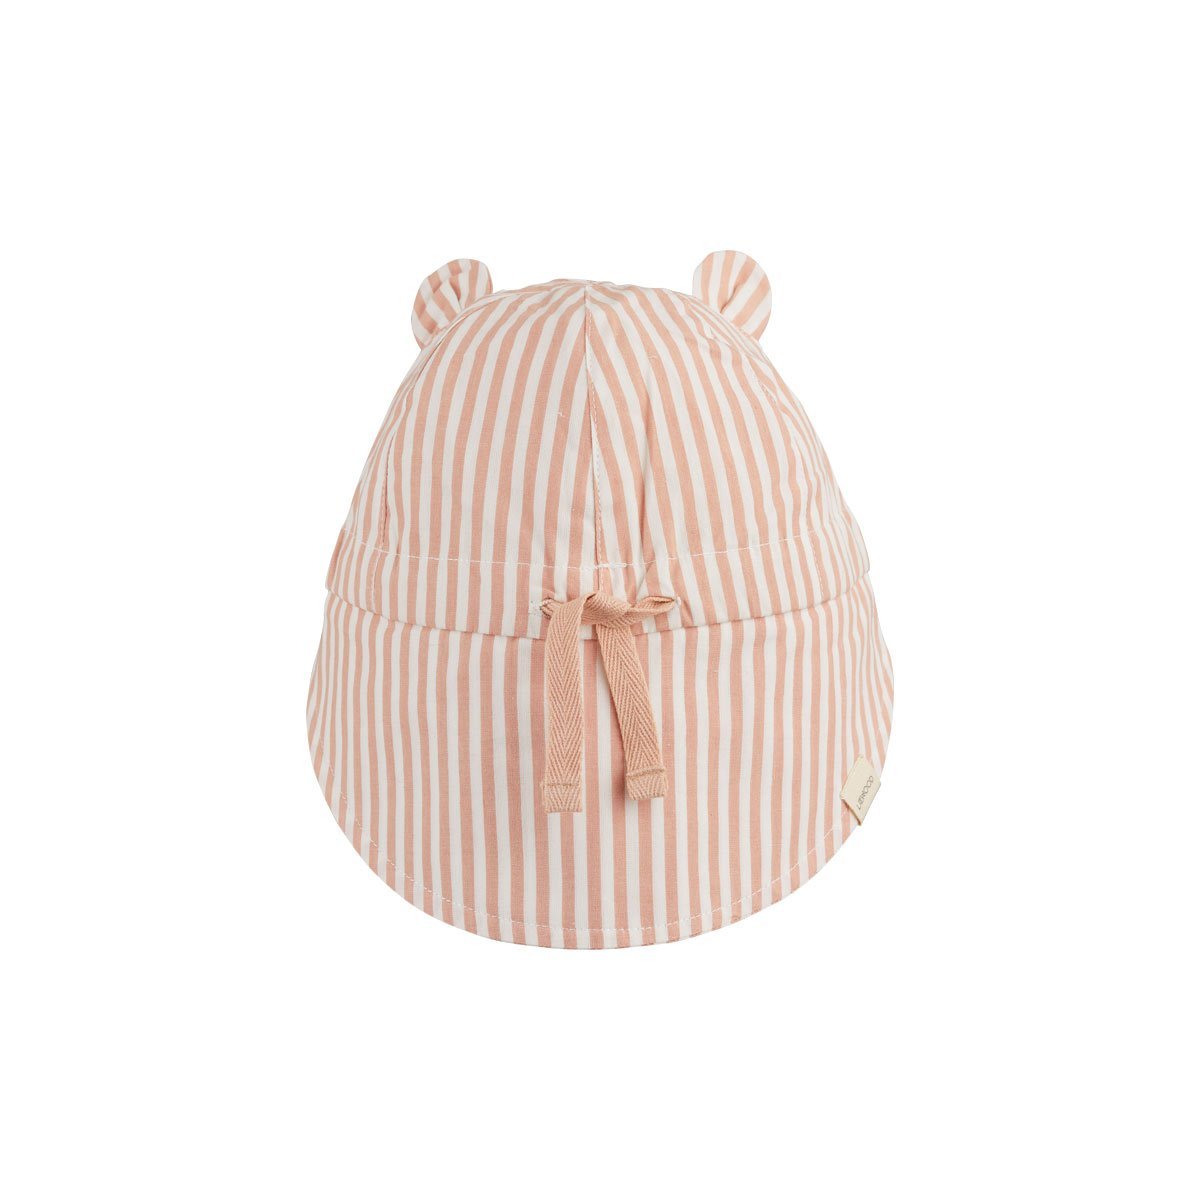 Liewood Gorm Sun Hat in Coral Blush / Creme de la Creme Stripe - Scandibørn